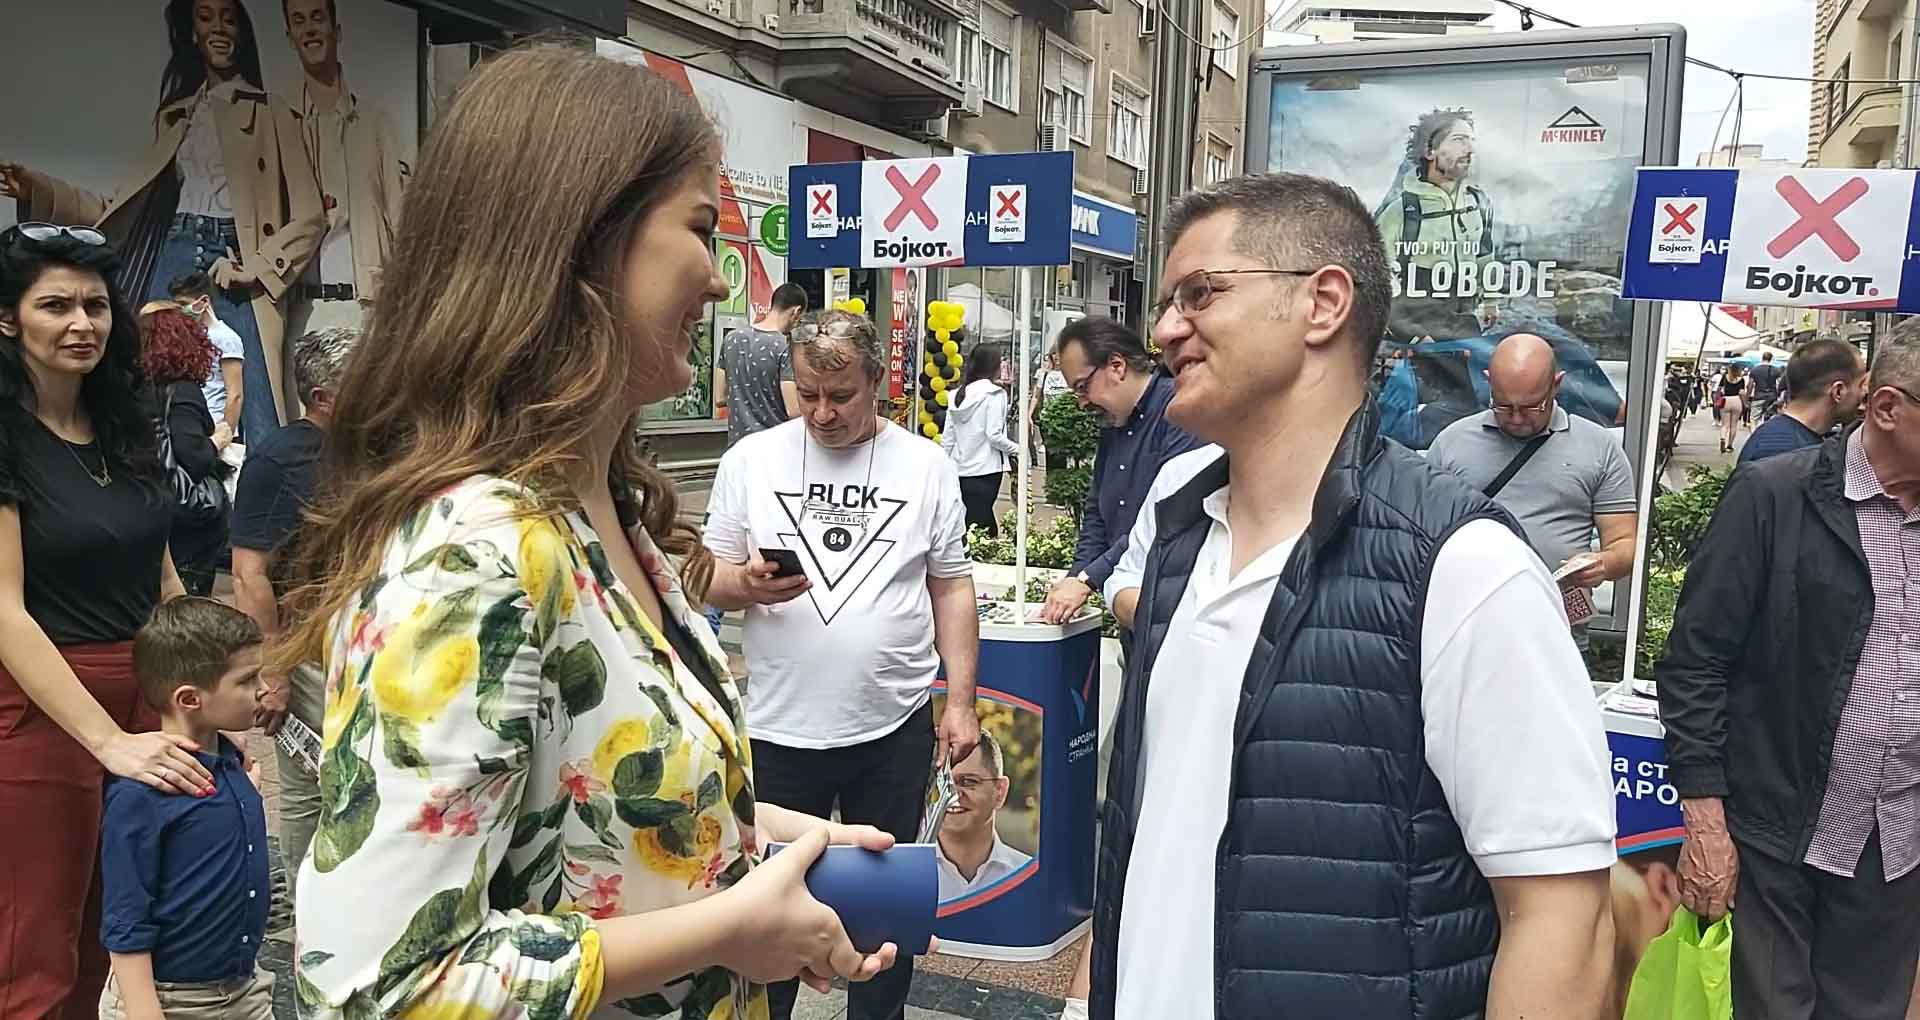 Јеремић: 21. јуна се не одржавају избори, већ кастинг за нови серијал „Беле лађе“